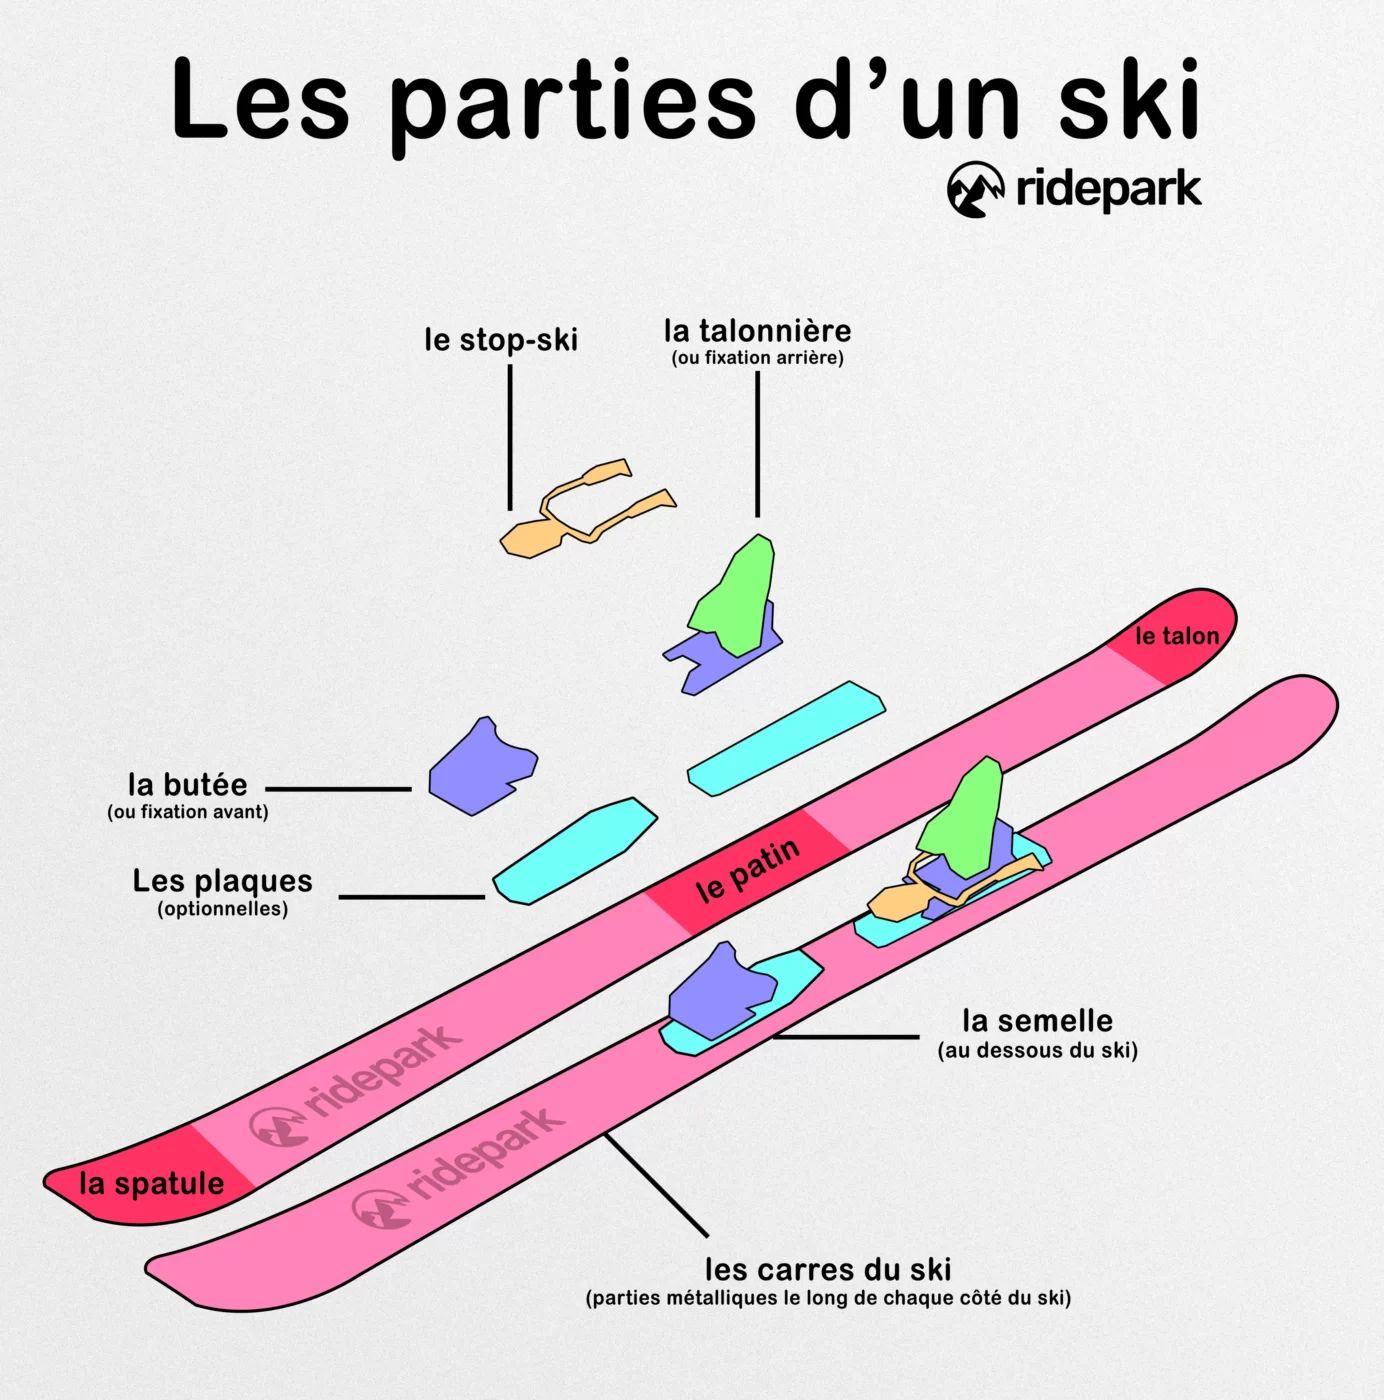 Les différentes parties d'un ski, schéma représentant des skis et décrivant les différentes parties.